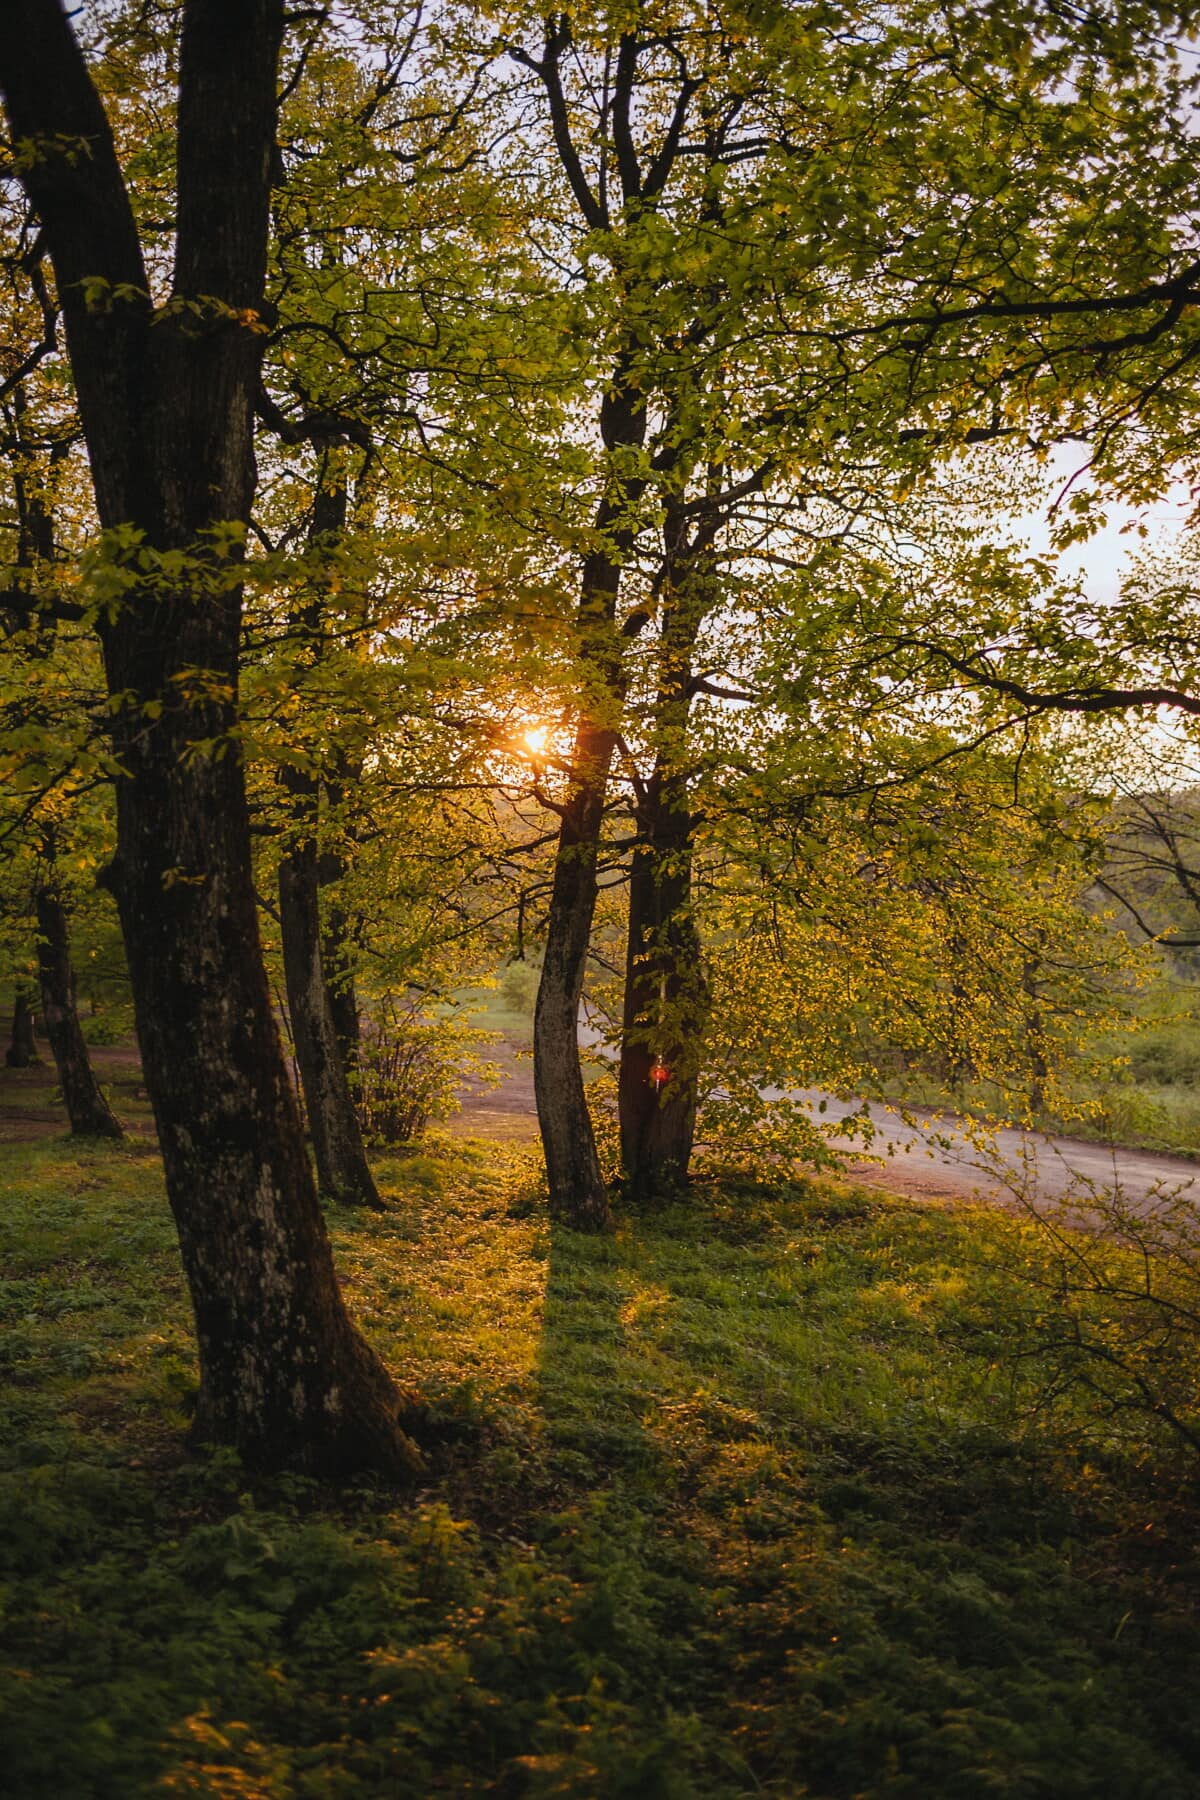 Outono, floresta, folha, árvore, árvores, madeira, parque, paisagem, amanhecer, bom tempo